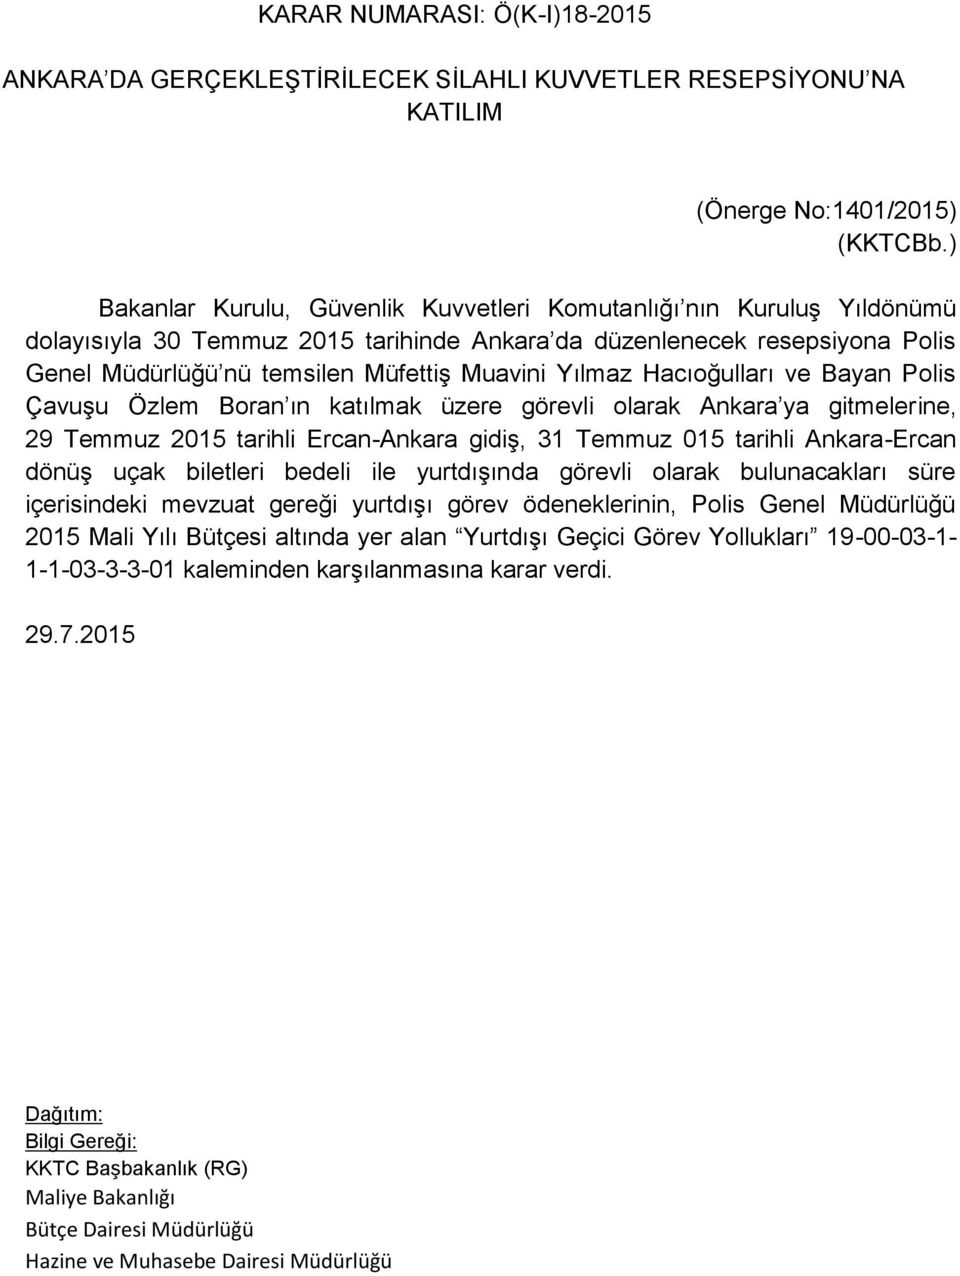 Yılmaz Hacıoğulları ve Bayan Polis Çavuşu Özlem Boran ın katılmak üzere görevli olarak Ankara ya gitmelerine, 29 Temmuz 2015 tarihli Ercan-Ankara gidiş, 31 Temmuz 015 tarihli Ankara-Ercan dönüş uçak